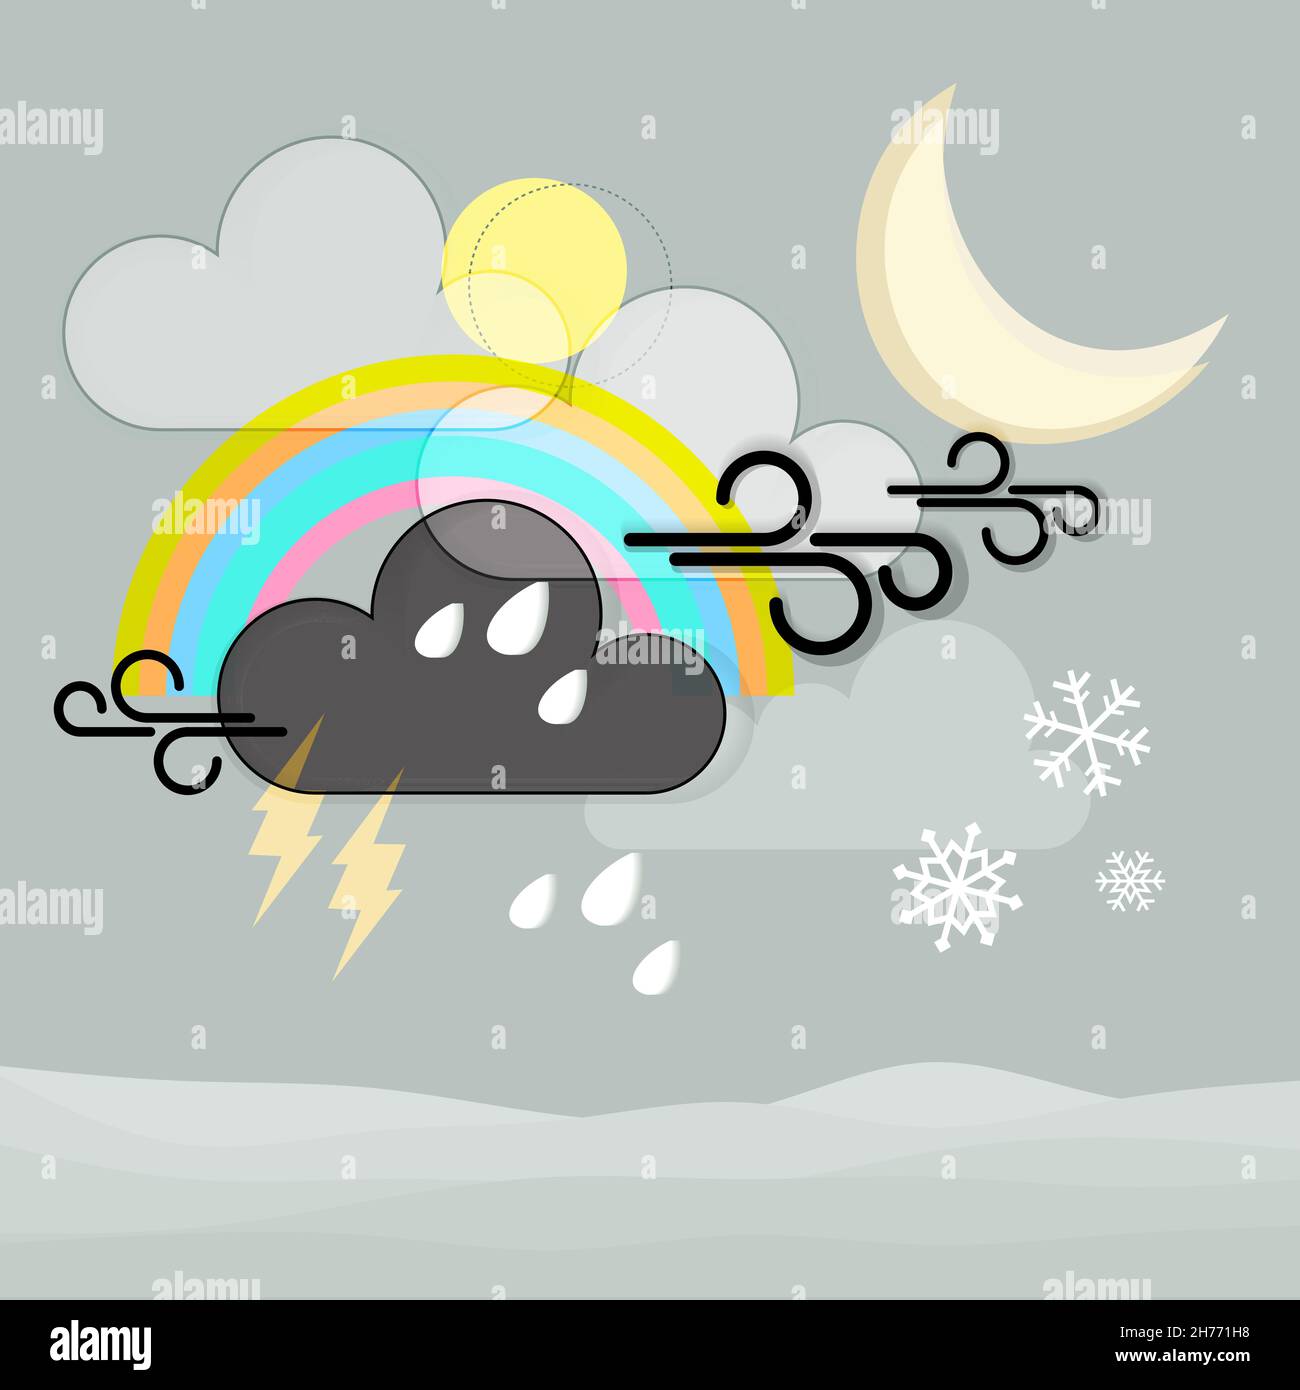 Illustrazione vettoriale di simboli meteo misti - pioggia di neve e nuvole. Fiocchi di neve d'inverno e icone arcobaleno per sito web, app meteo, meteorologia, meteo Illustrazione Vettoriale